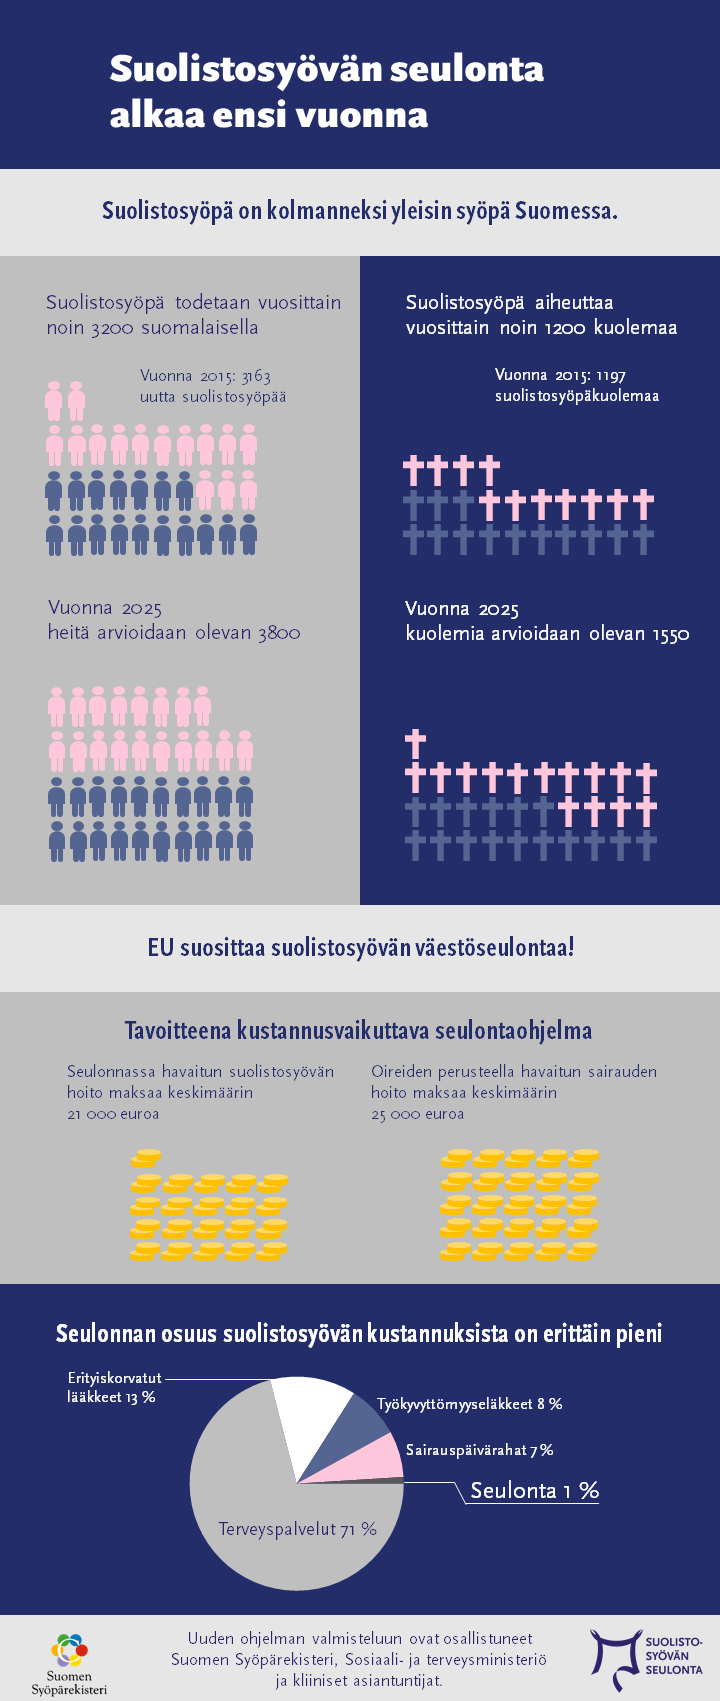 Infograafi suolistosyövän seulontaohjelmaan liityen. Seulonta alkaa Suomessa vuonna 2019. Suolistosyöpä on kolmanneksi yleisin syöpä Suomessa, se todetaan vuosittain noin 3200 henkilöllä ja siihen kuolee noin 1100 henkilöä. Luvut ovat kasvussa. EU suosittaa suolistosyövän väestöseulontaa. Tavoitteena on kustannusvaikuttava seulonta, yleisesti seulonnan osuus suolistosyövän kokonaiskustannuksista on erittäin pieni, noin yksi prosentti.